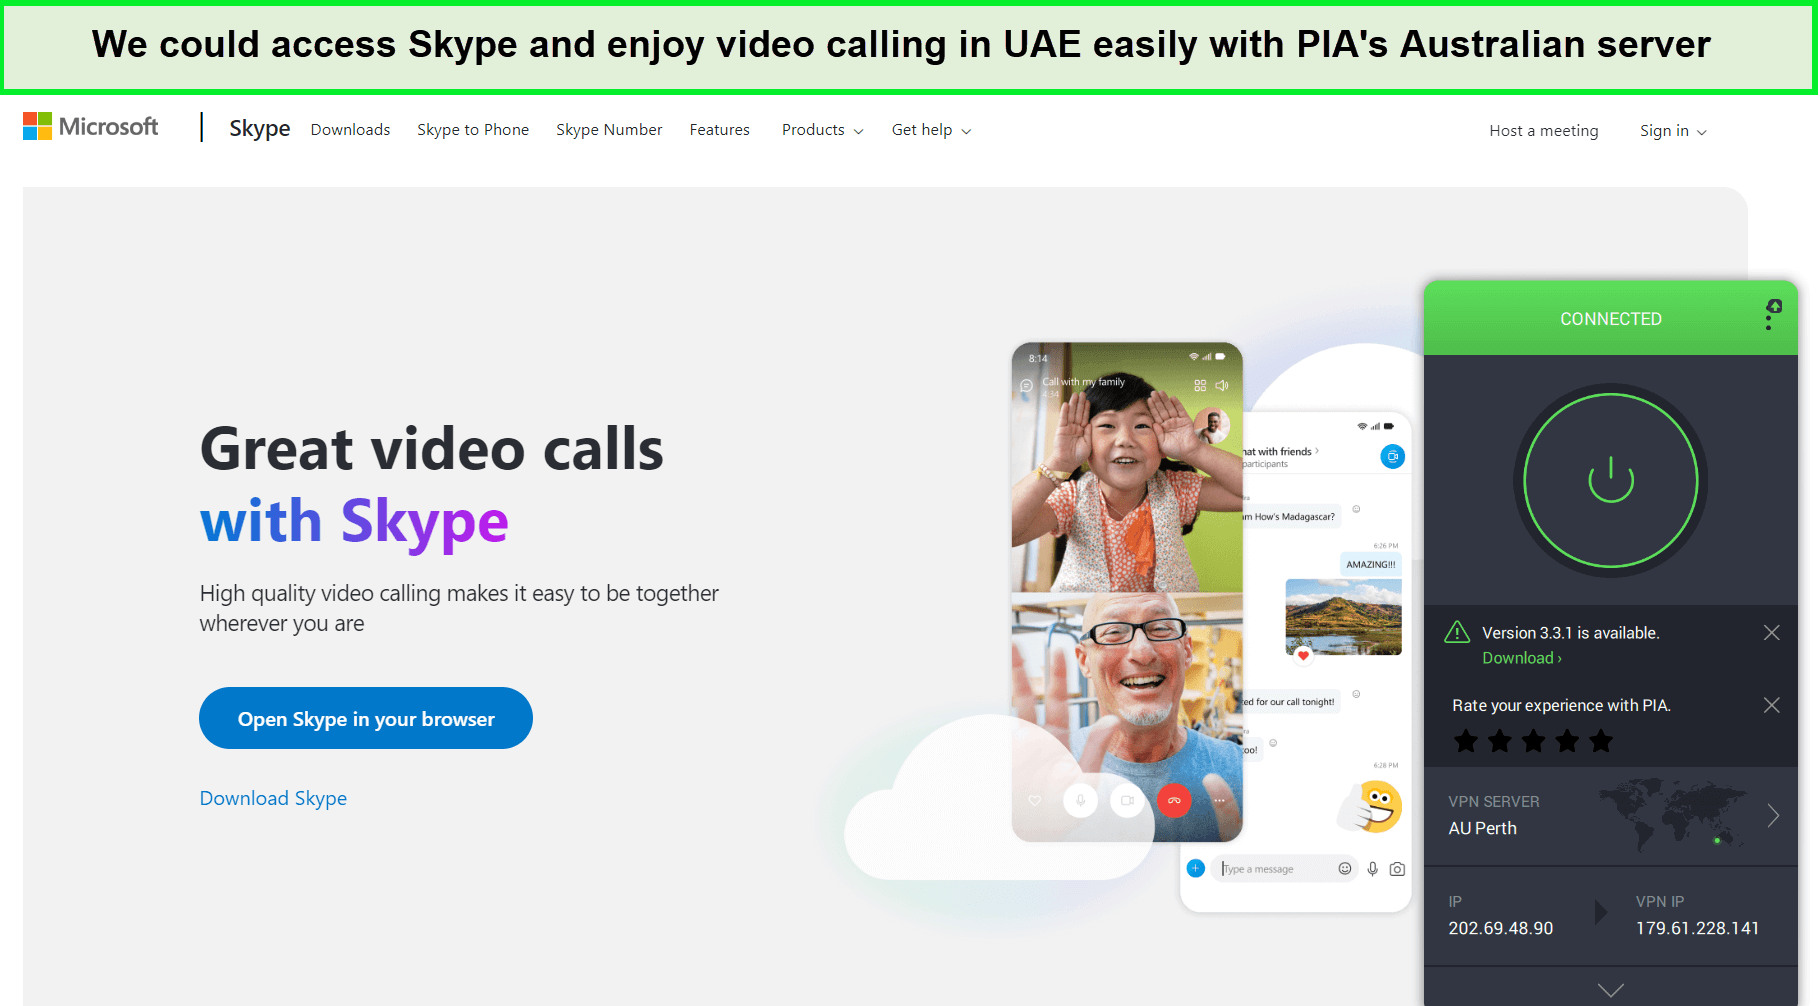  Pia-Skype-freigeschaltet  